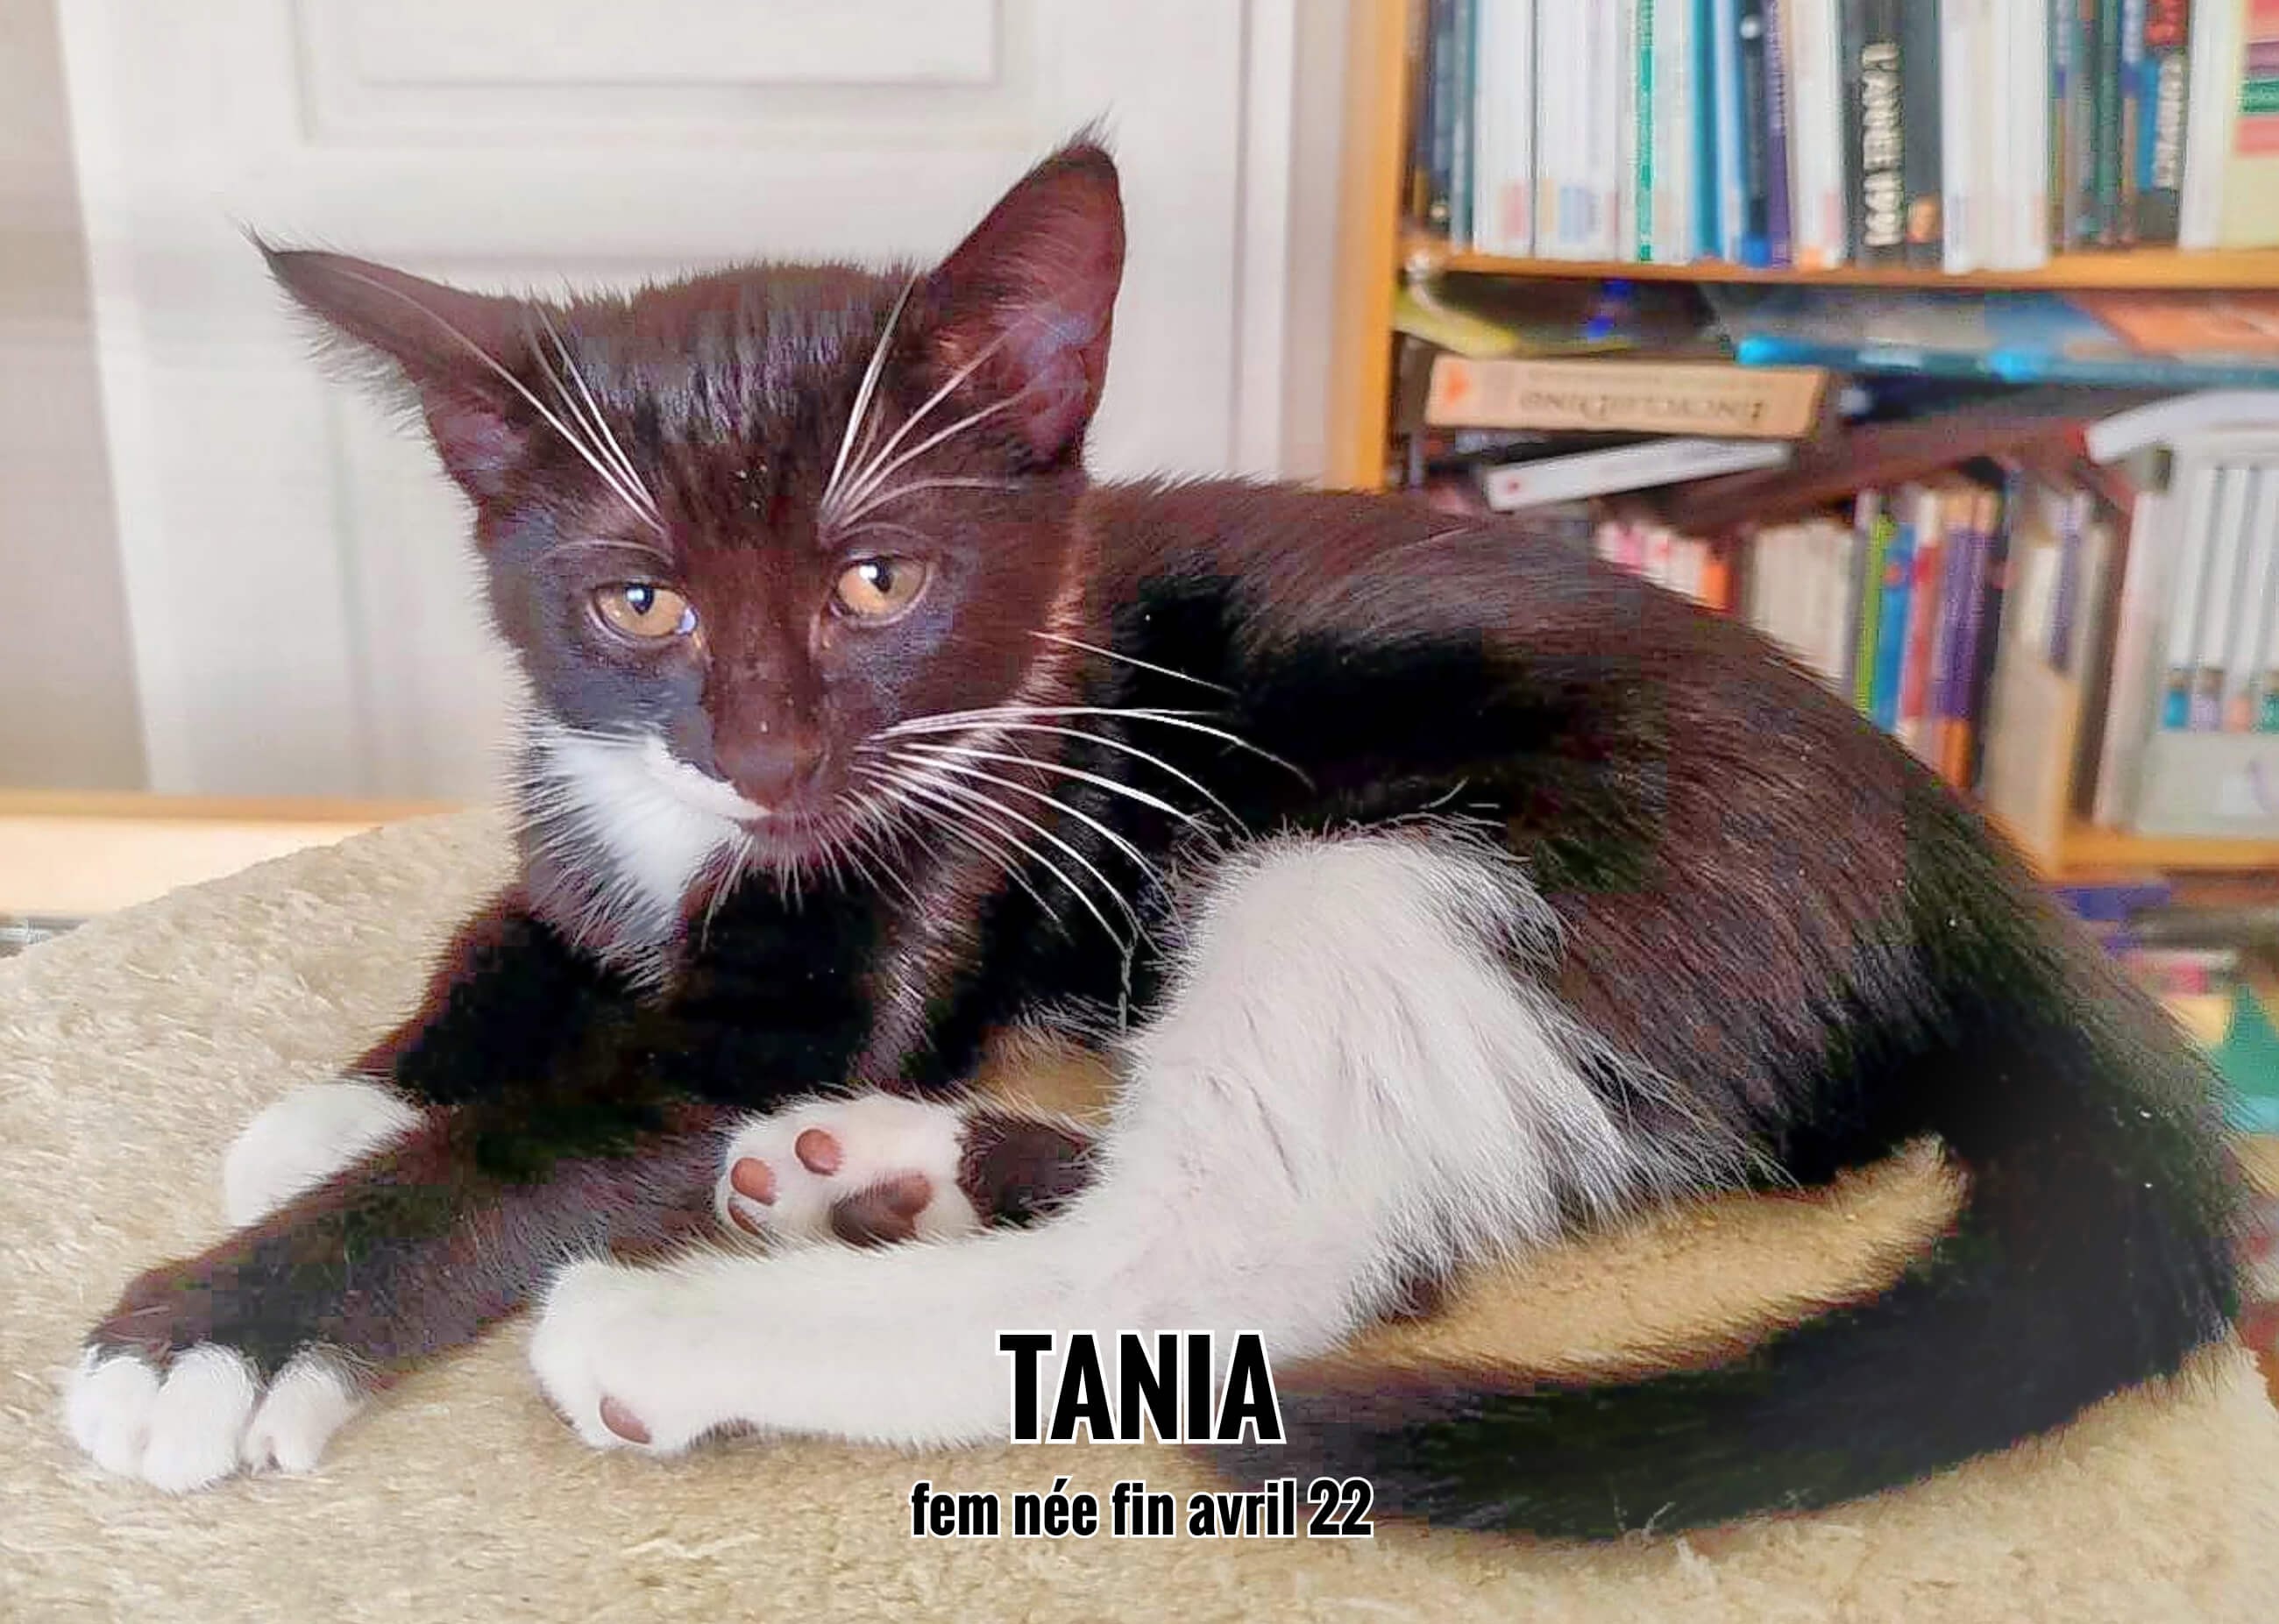 17/08/22 : Tania a été choisie, elle sera bientôt chez elle (33)